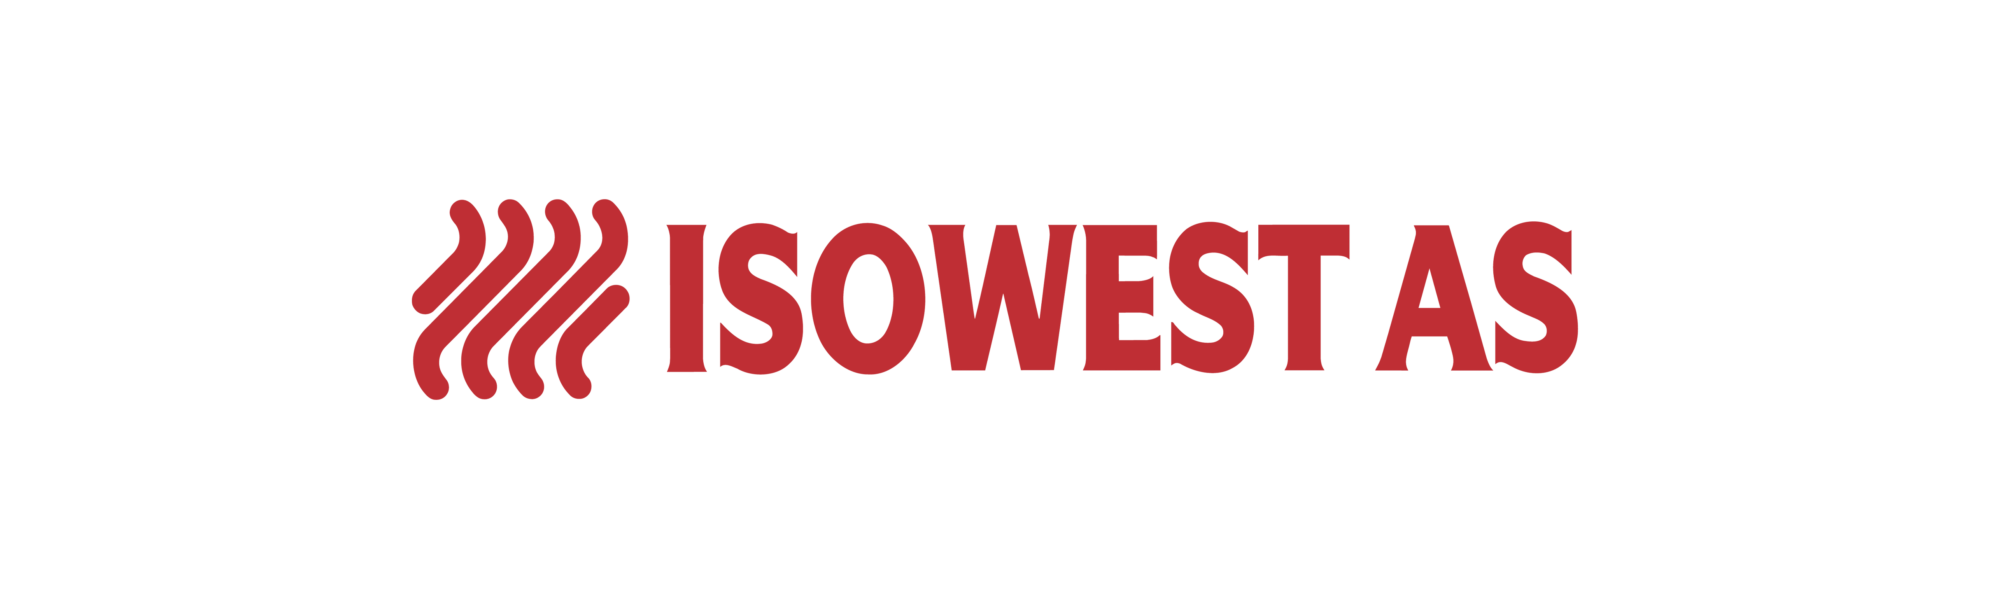 Langset utvider selskapsporteføljen med kjøp av Isowest AS og vokser i den maritime delen av konsernet